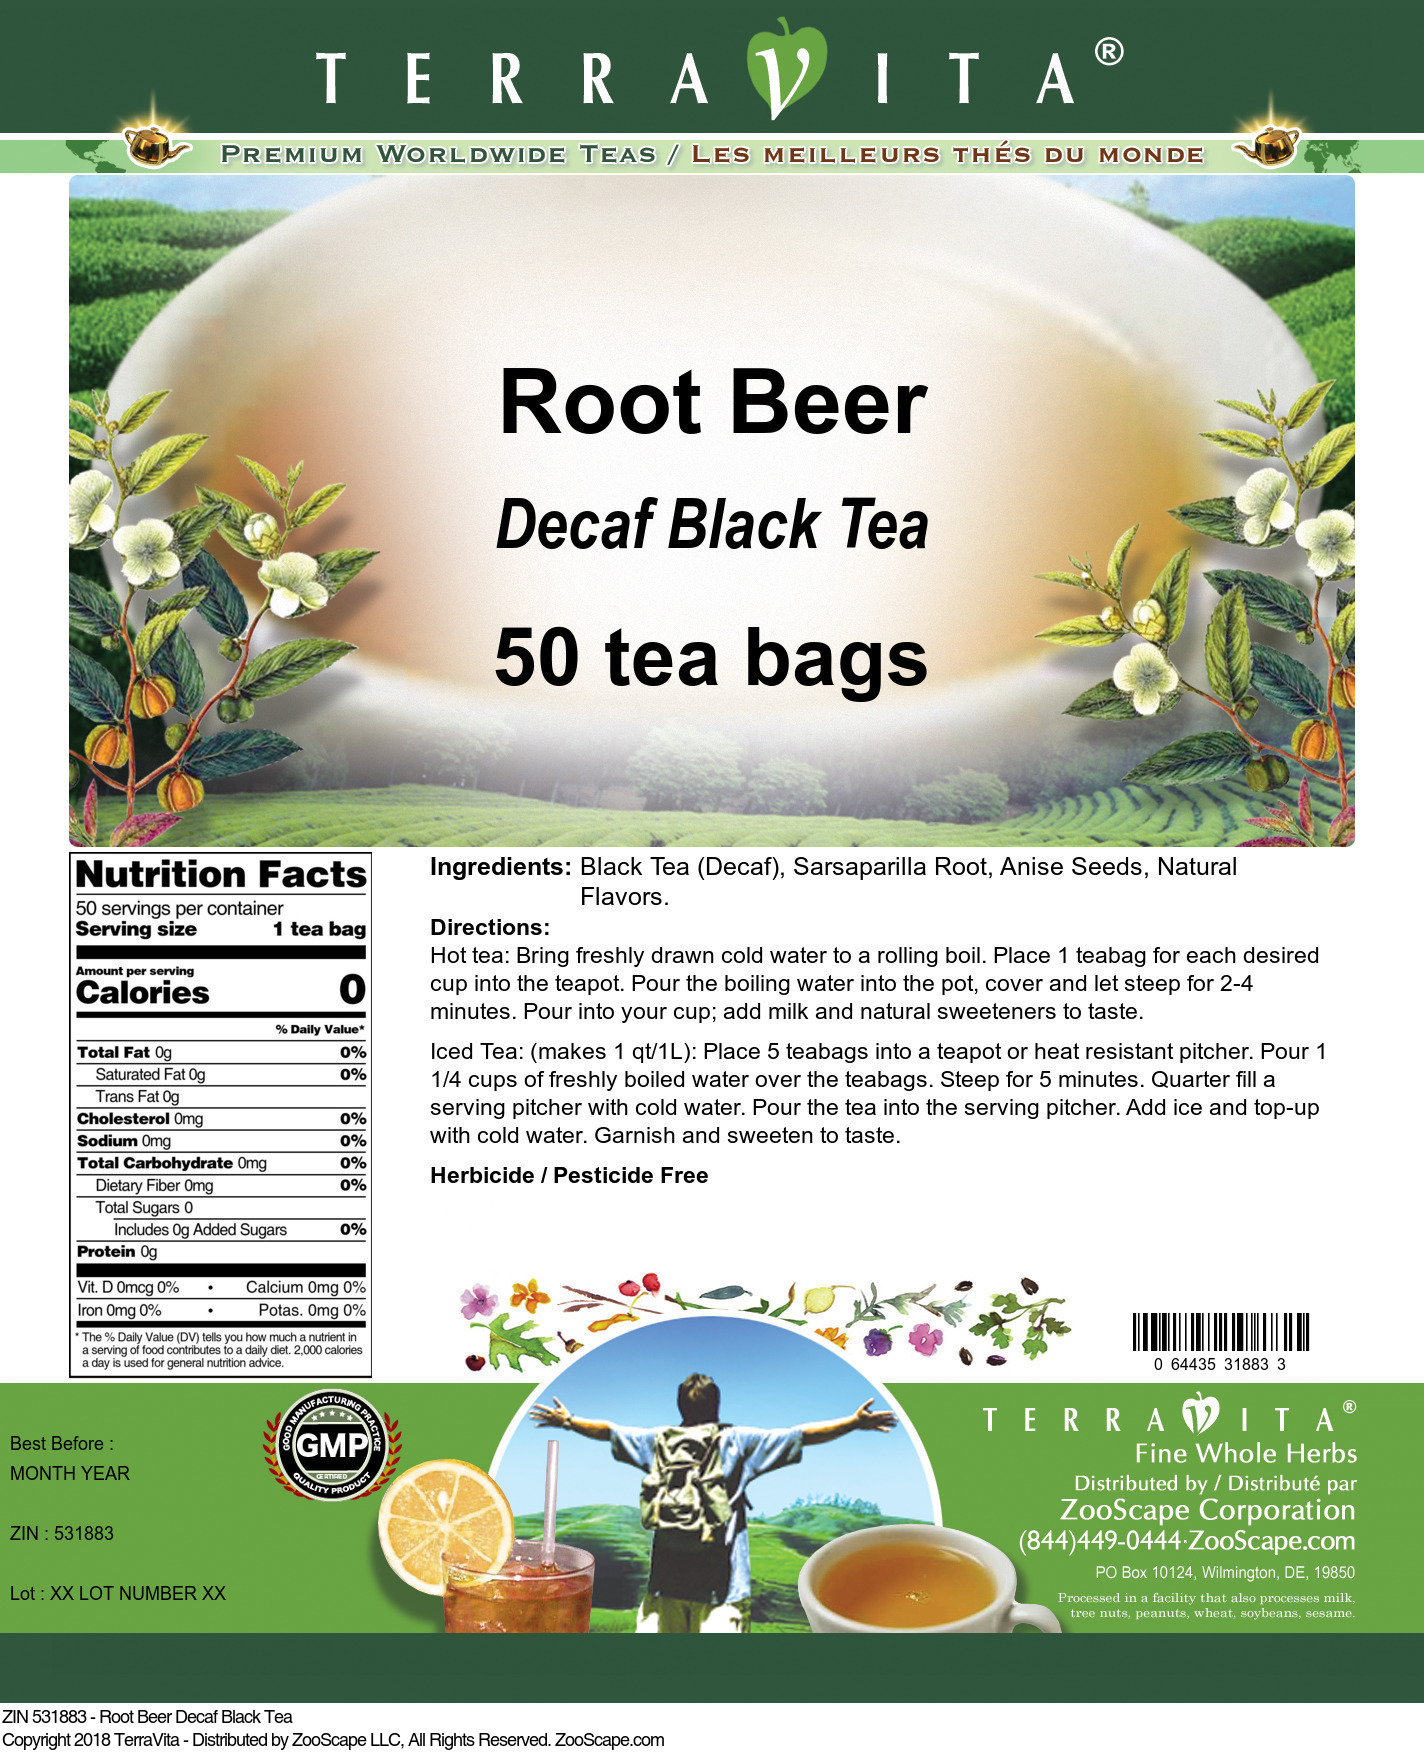 Root Beer Decaf Black Tea - Label